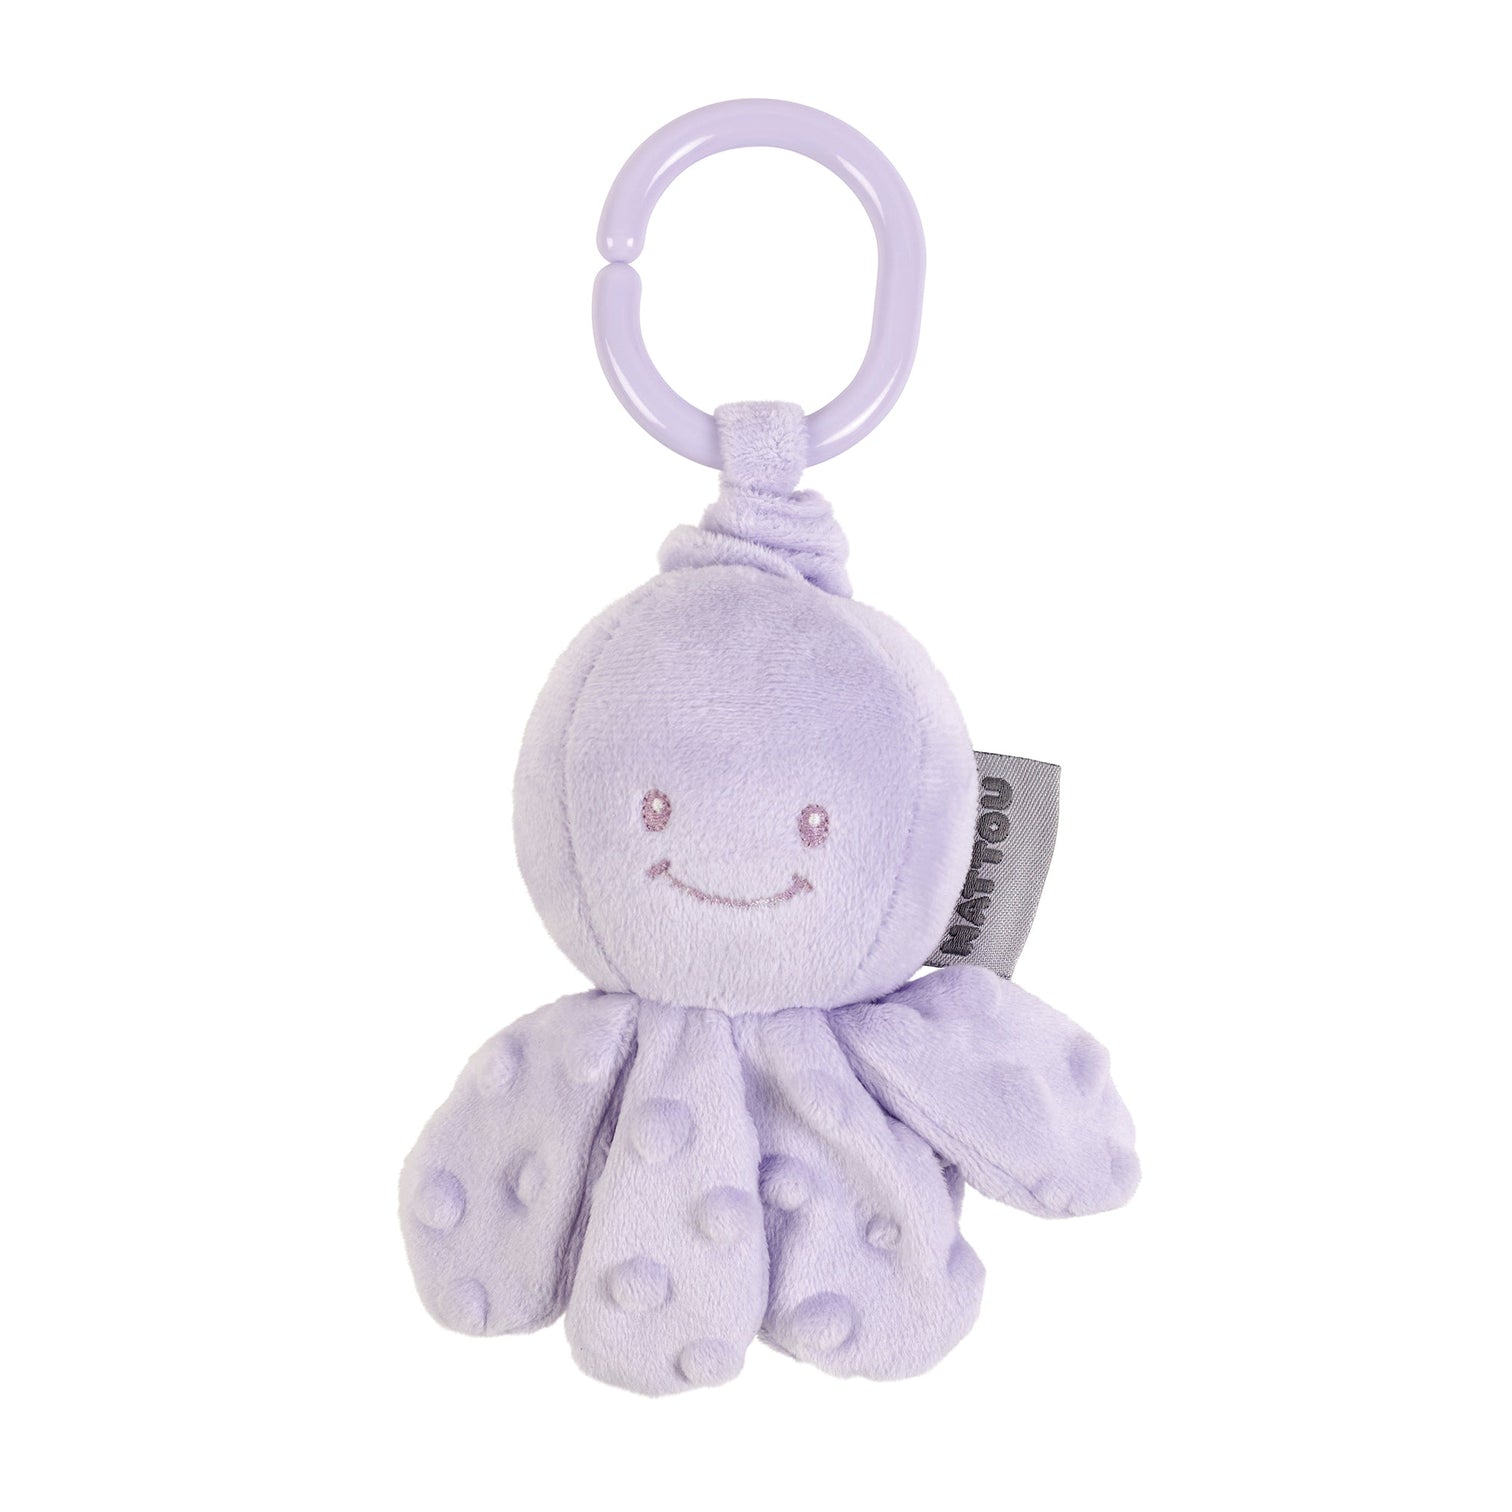 Игрушка мягкая Nattou Soft toy Lapidou Octopus Осьминог с вибрацией lilac 876506